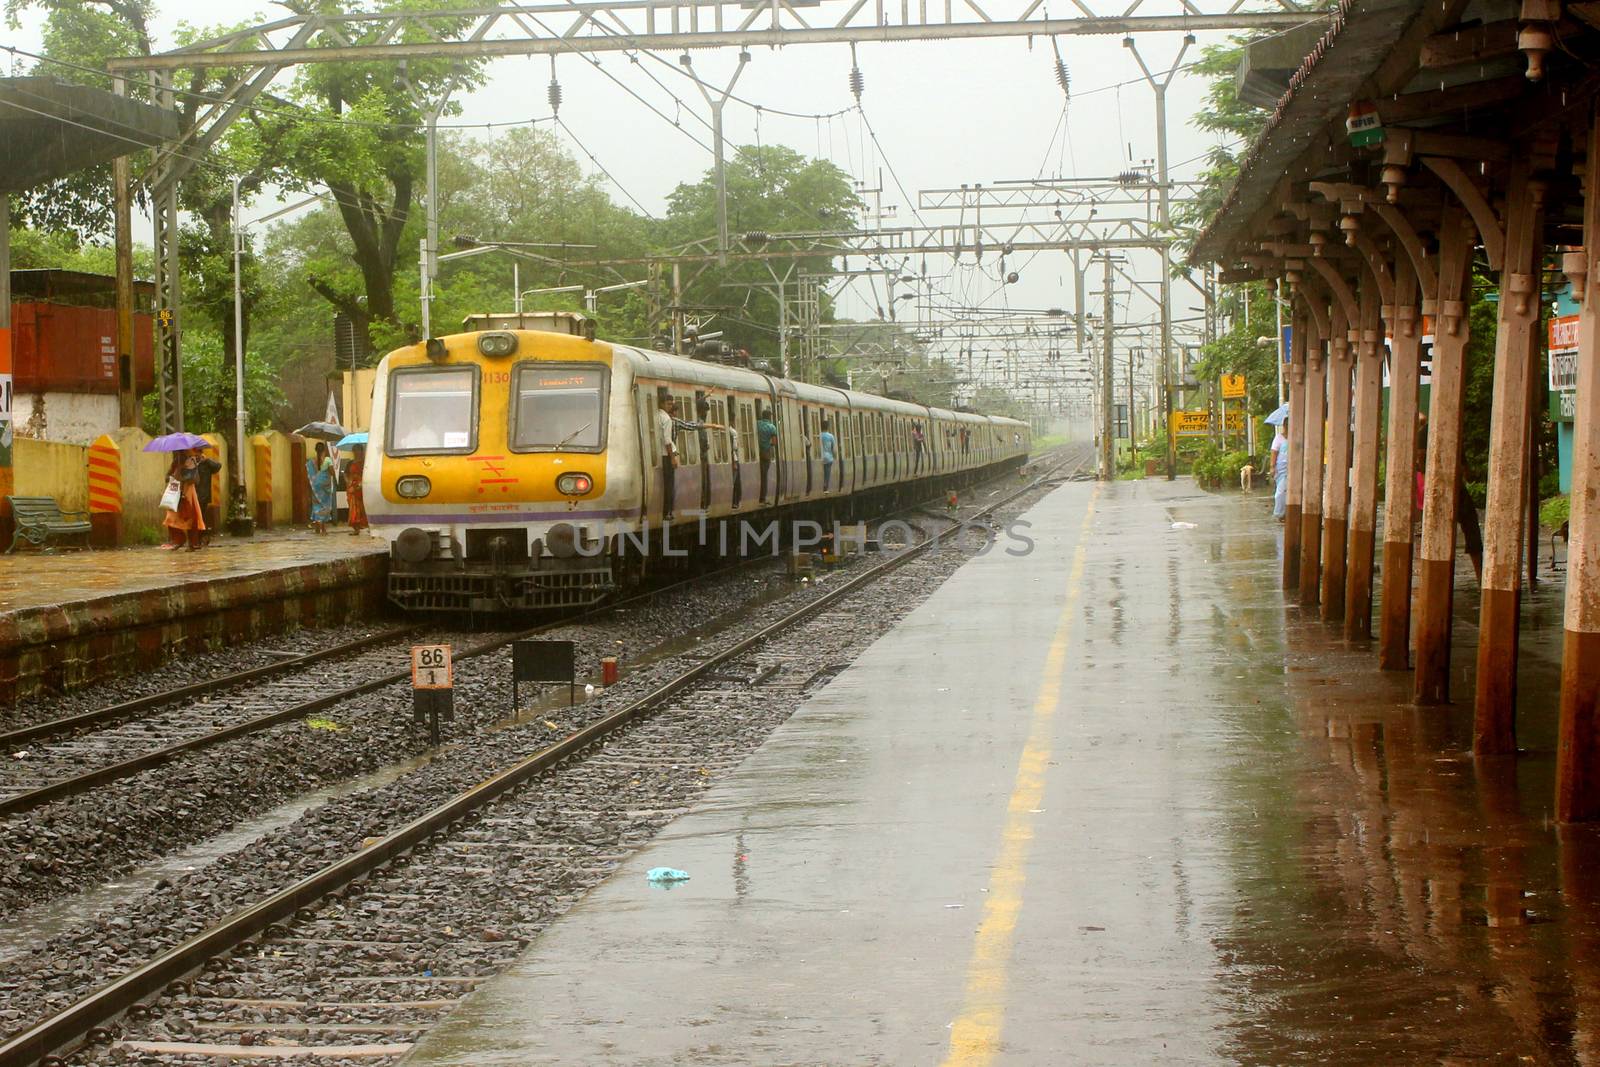 An Indian local train leaves a rural station during heavy monsoon rains season